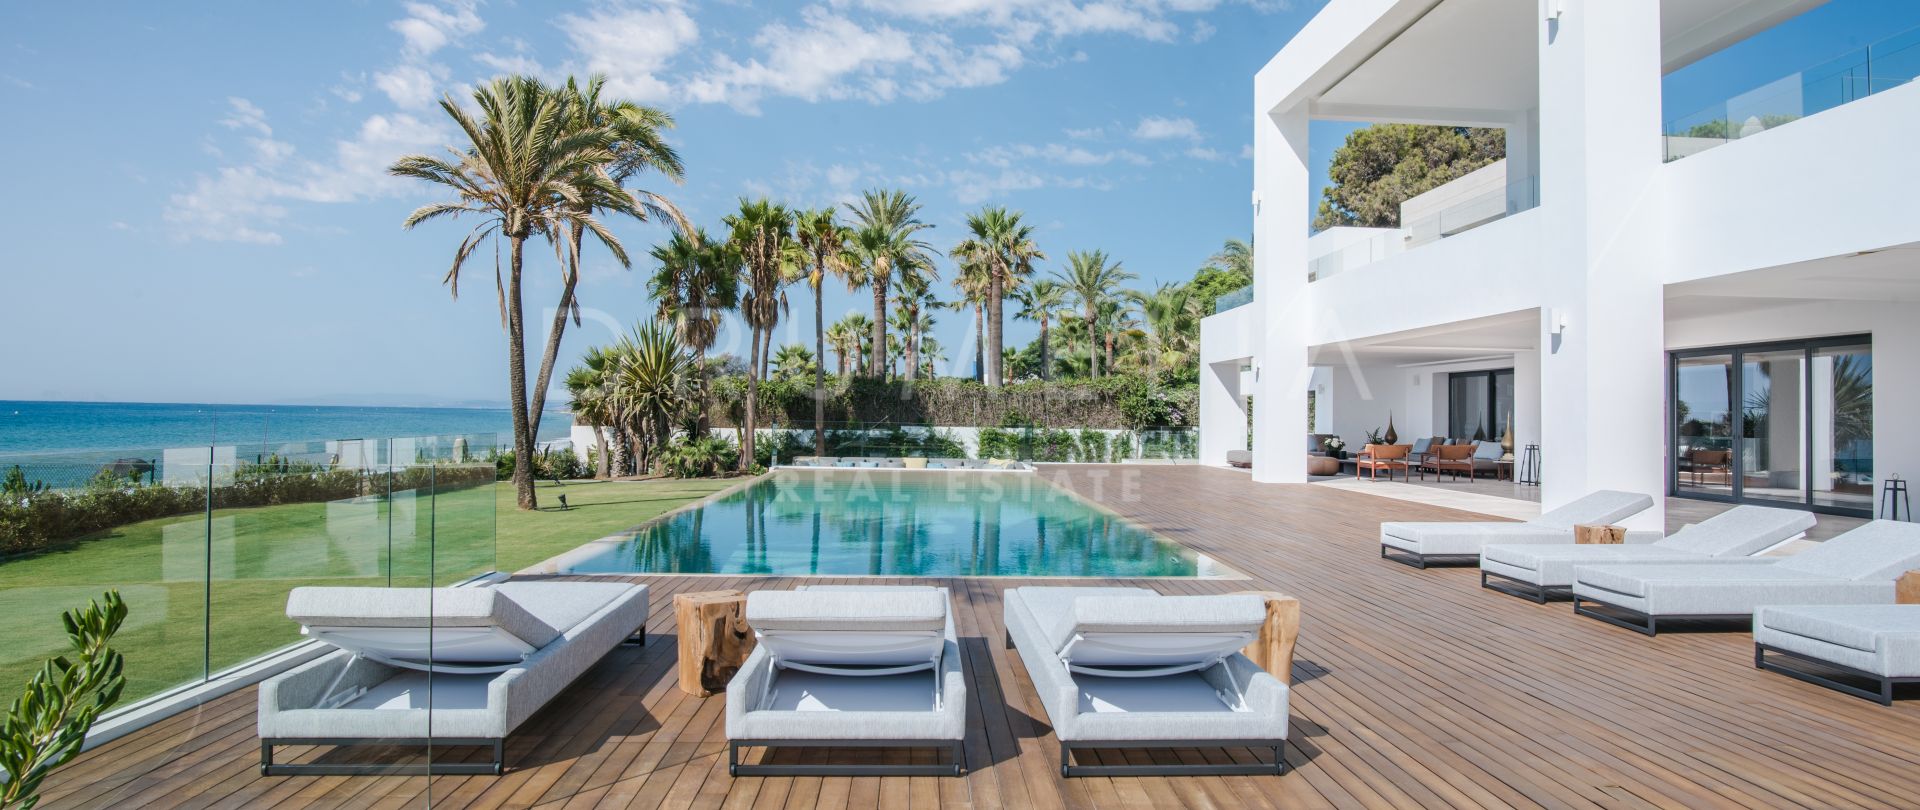 La Perla Blanca - Truly Breath-taking Modern Villa by Sea, El Paraiso Barronal, Estepona